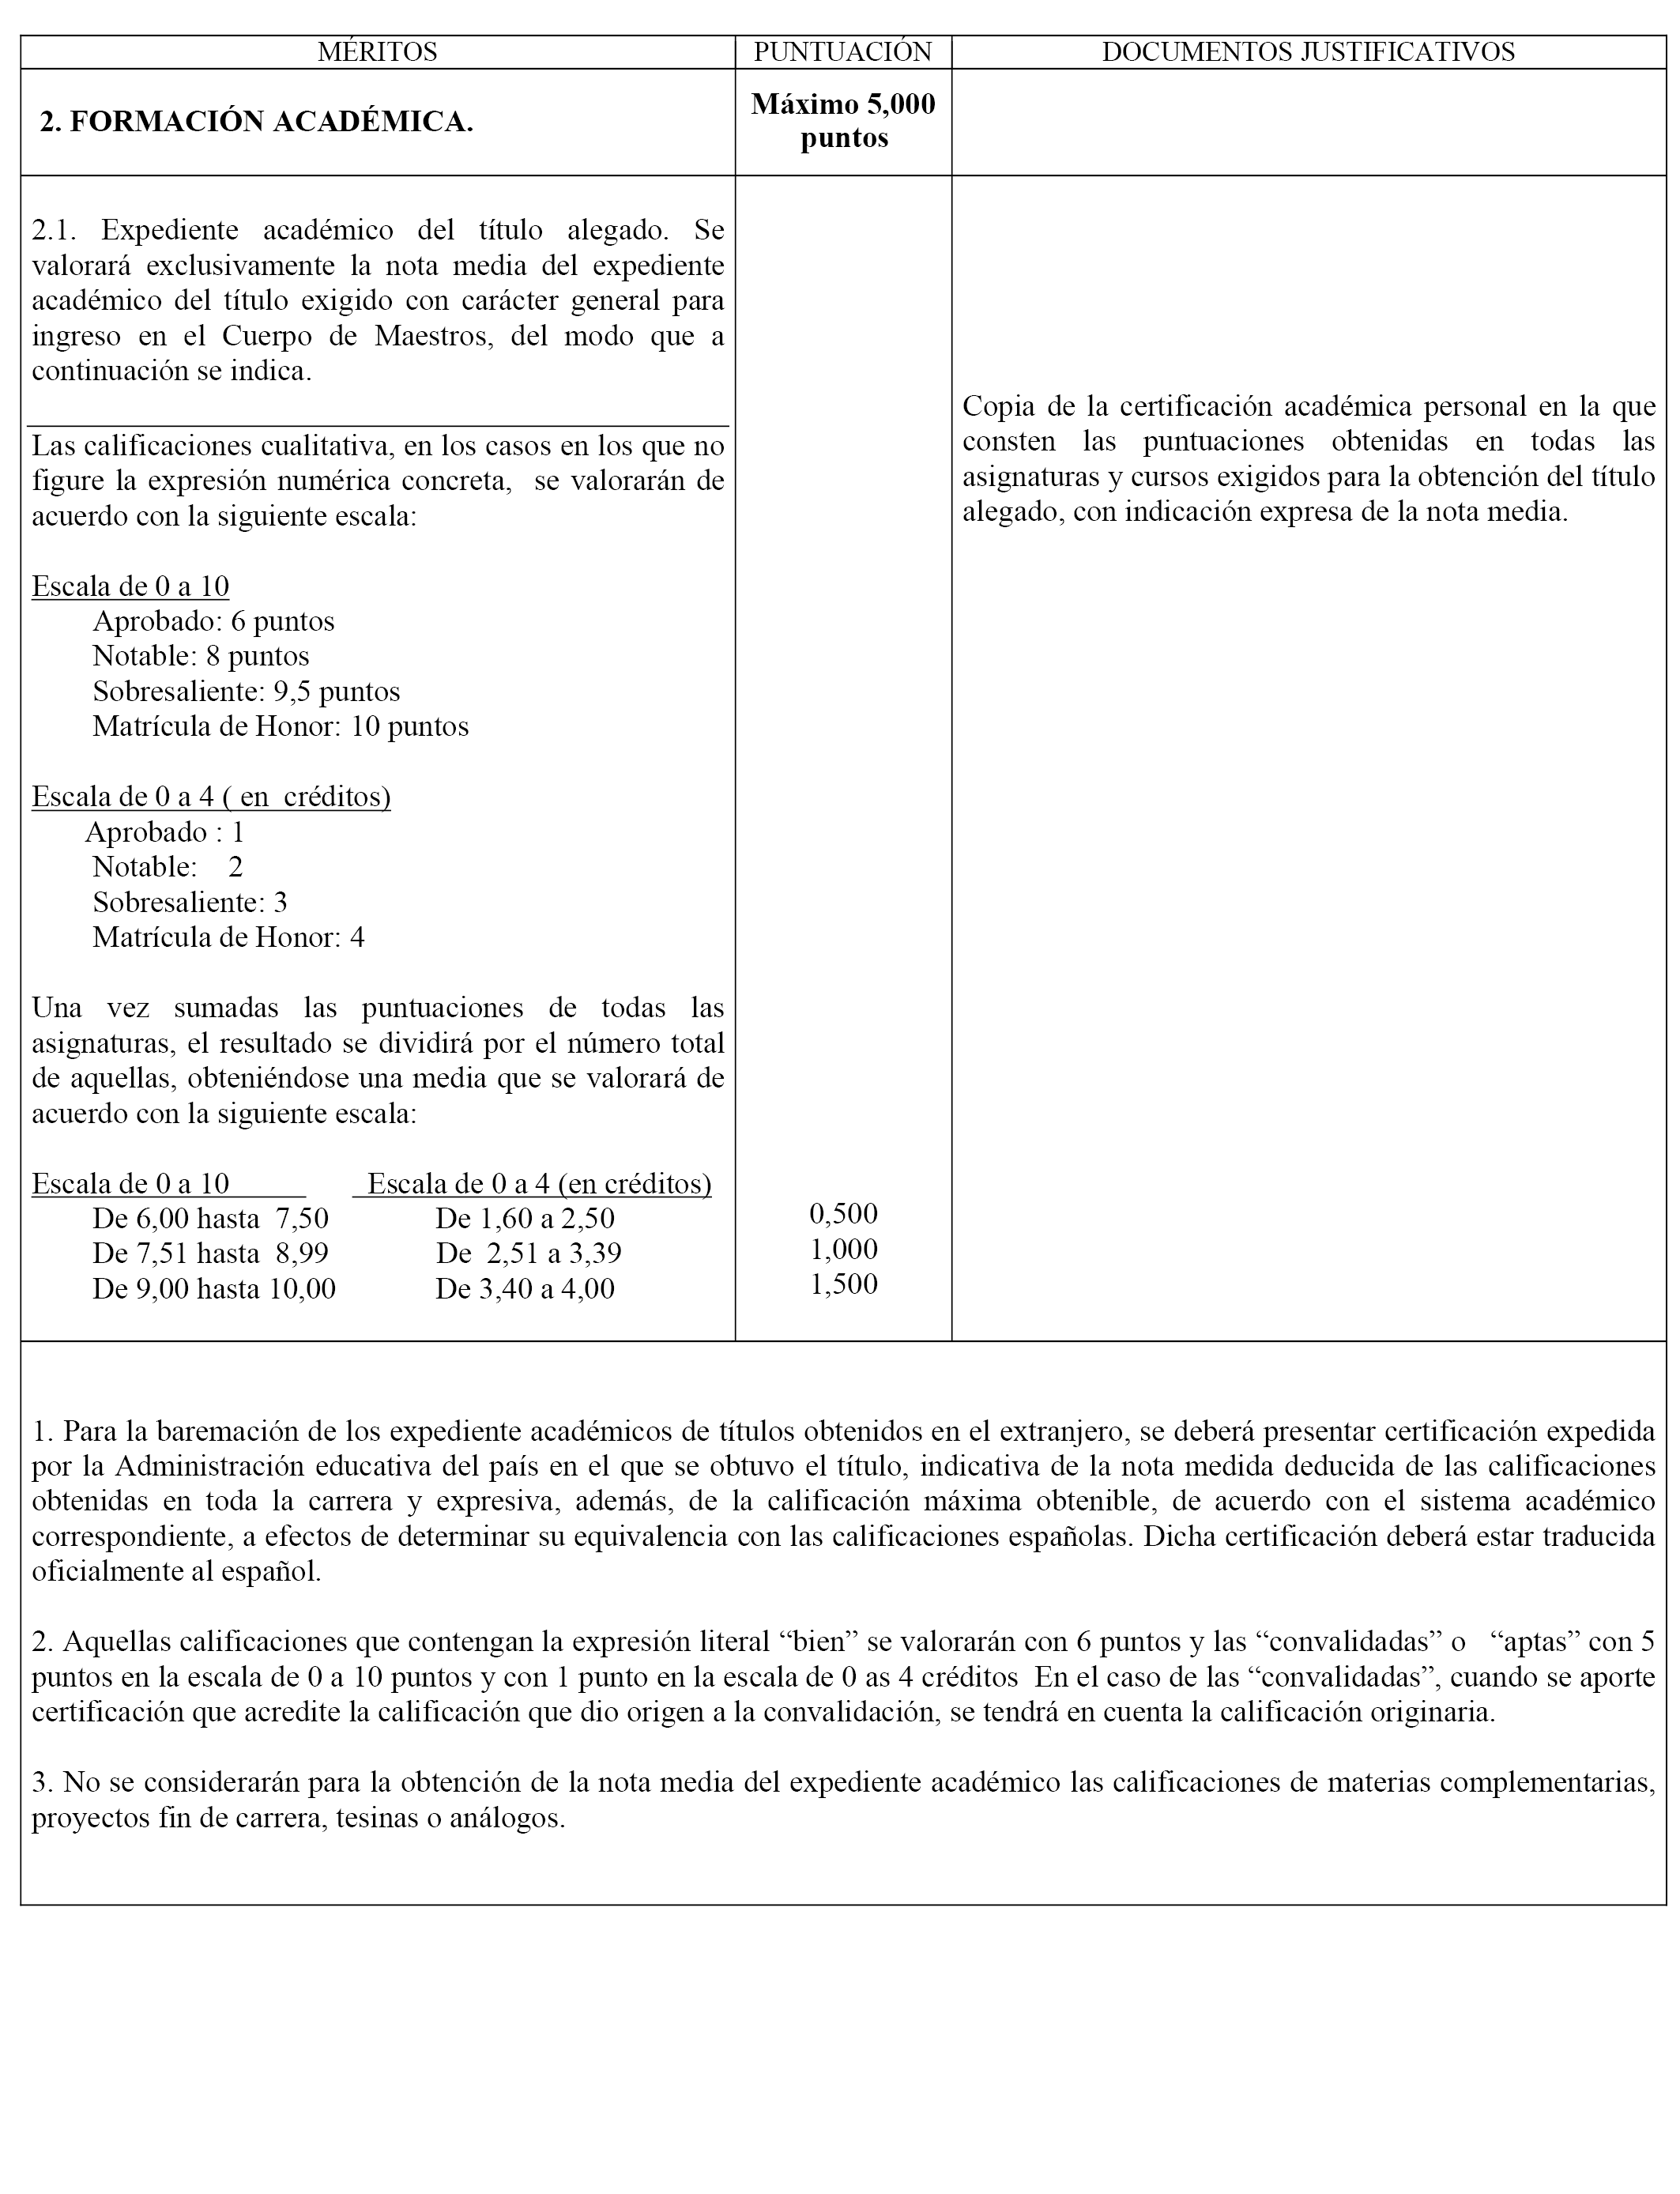 BOE.es - BOE-A-2019-5041 Resolución de 2 de abril de 2019, de la  Subsecretaría, por la que se convoca procedimiento selectivo de ingreso al  Cuerpo de Maestros para plazas del ámbito de gestión